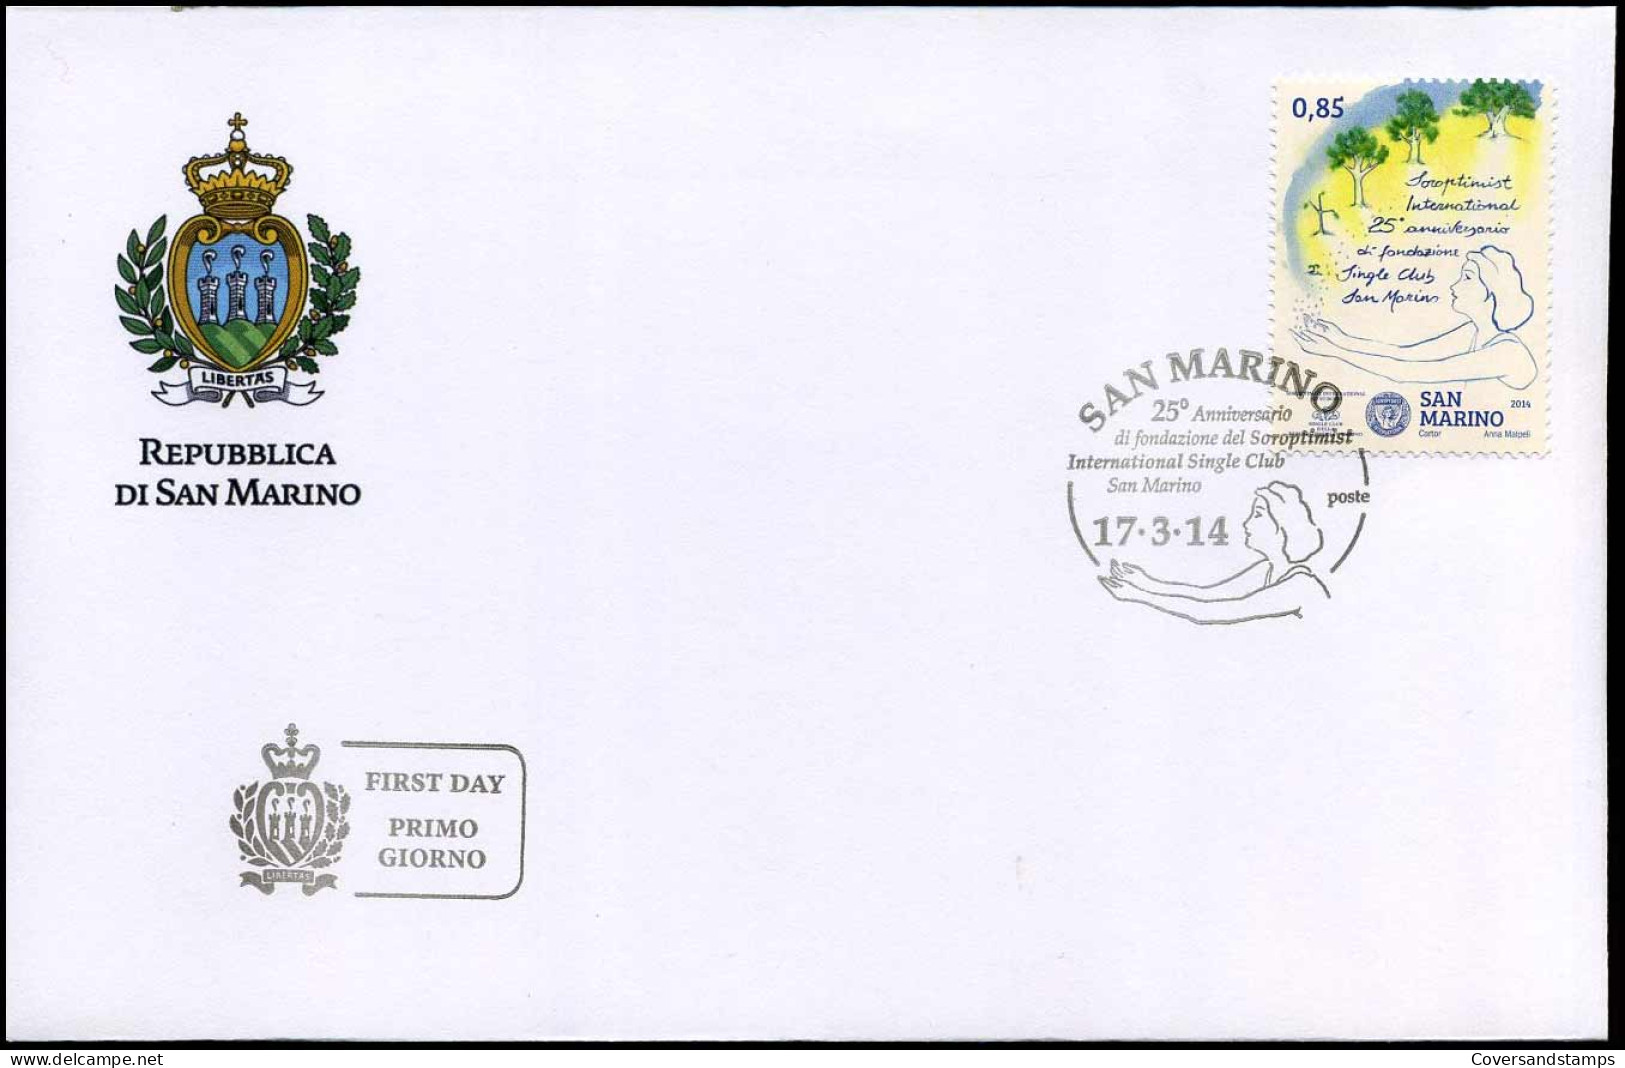 San Marino - FDC 2014 - 25° ANN. FONDAZIONE DEL SOROPTIMIST INTERNATIONAL SINGLE CLUS DI SAN MARINO - FDC